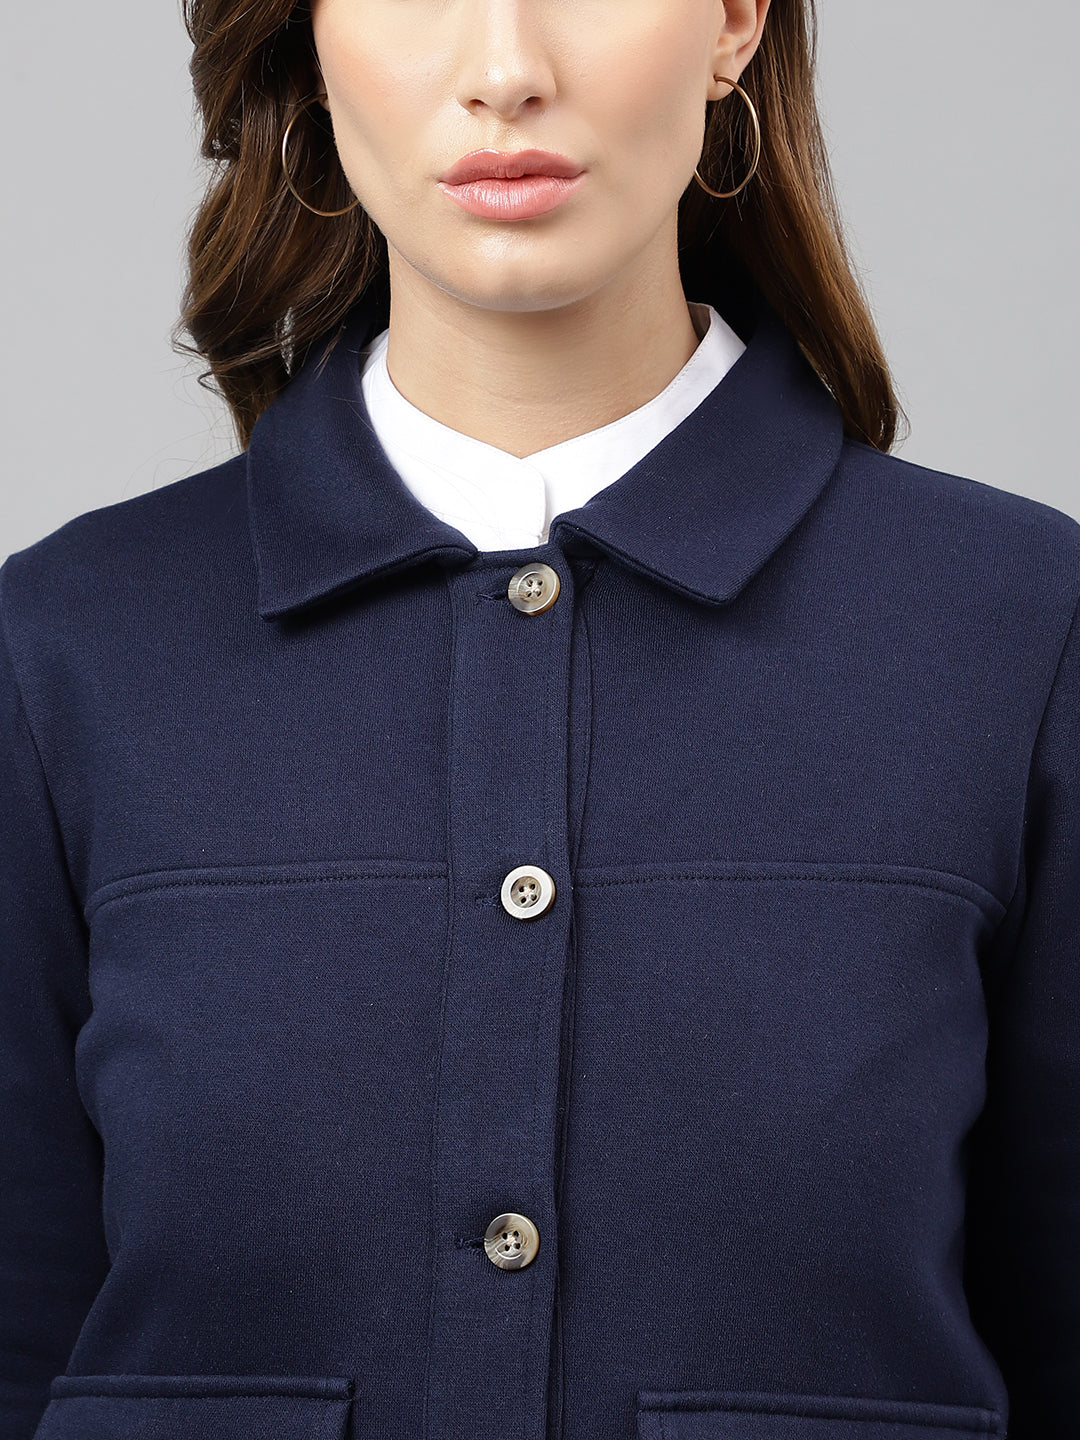 Women Navy Blue Solid Front Open Regular Collar Sweatshirt